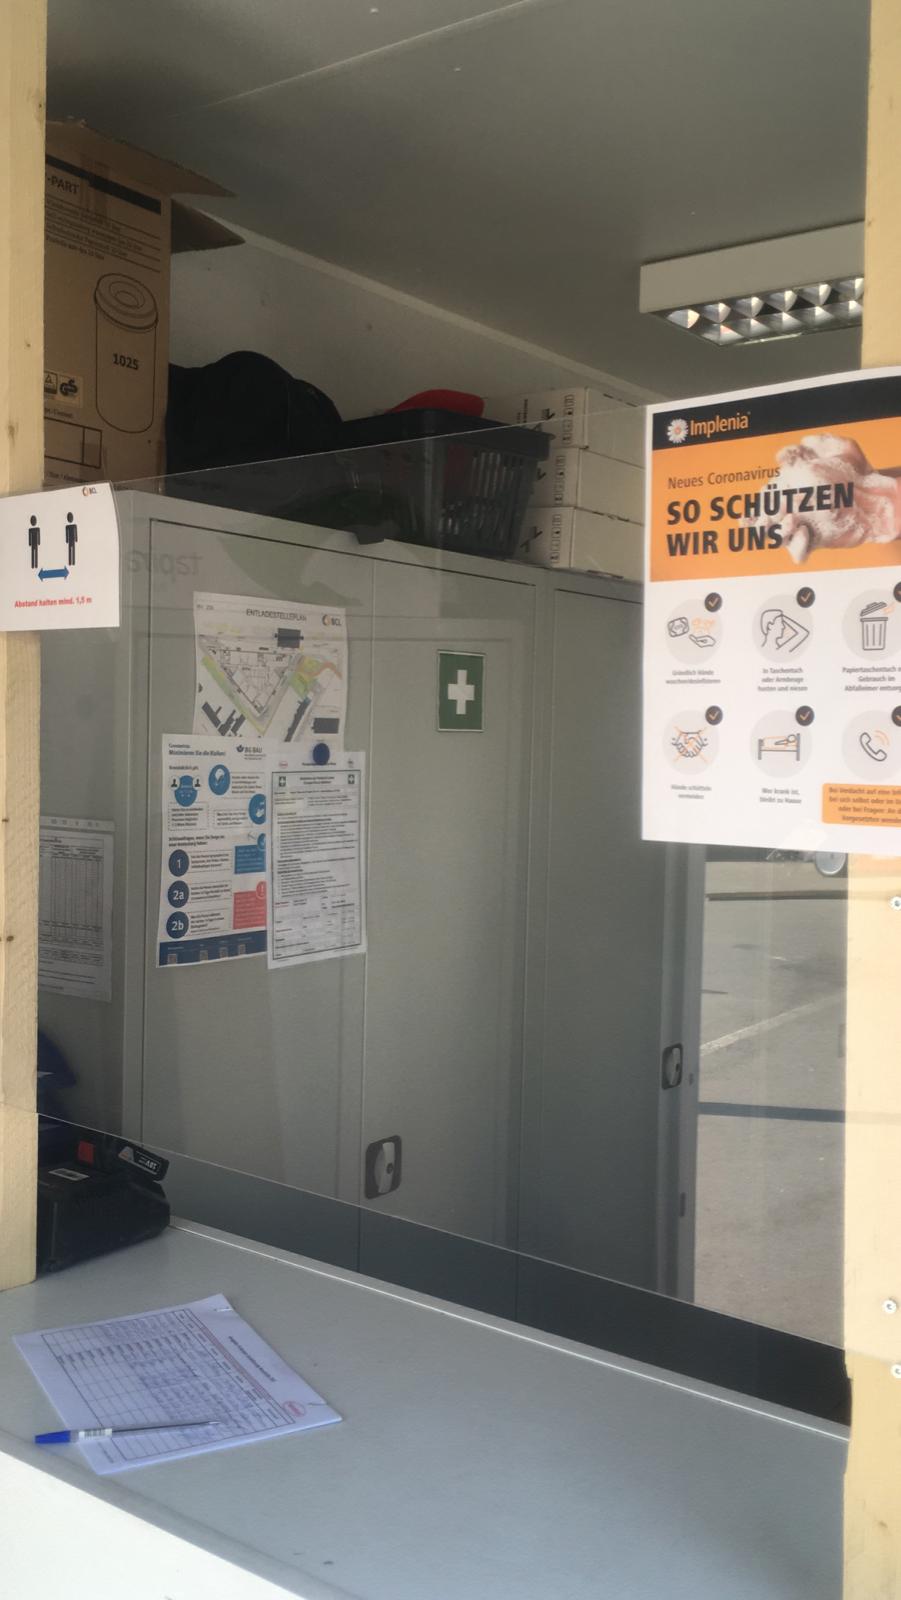 Protection hygiénique : une vitre en plexiglas a été installée dans le conteneur de contrôle d'accès, car la distance minimale ne peut être garantie partout.